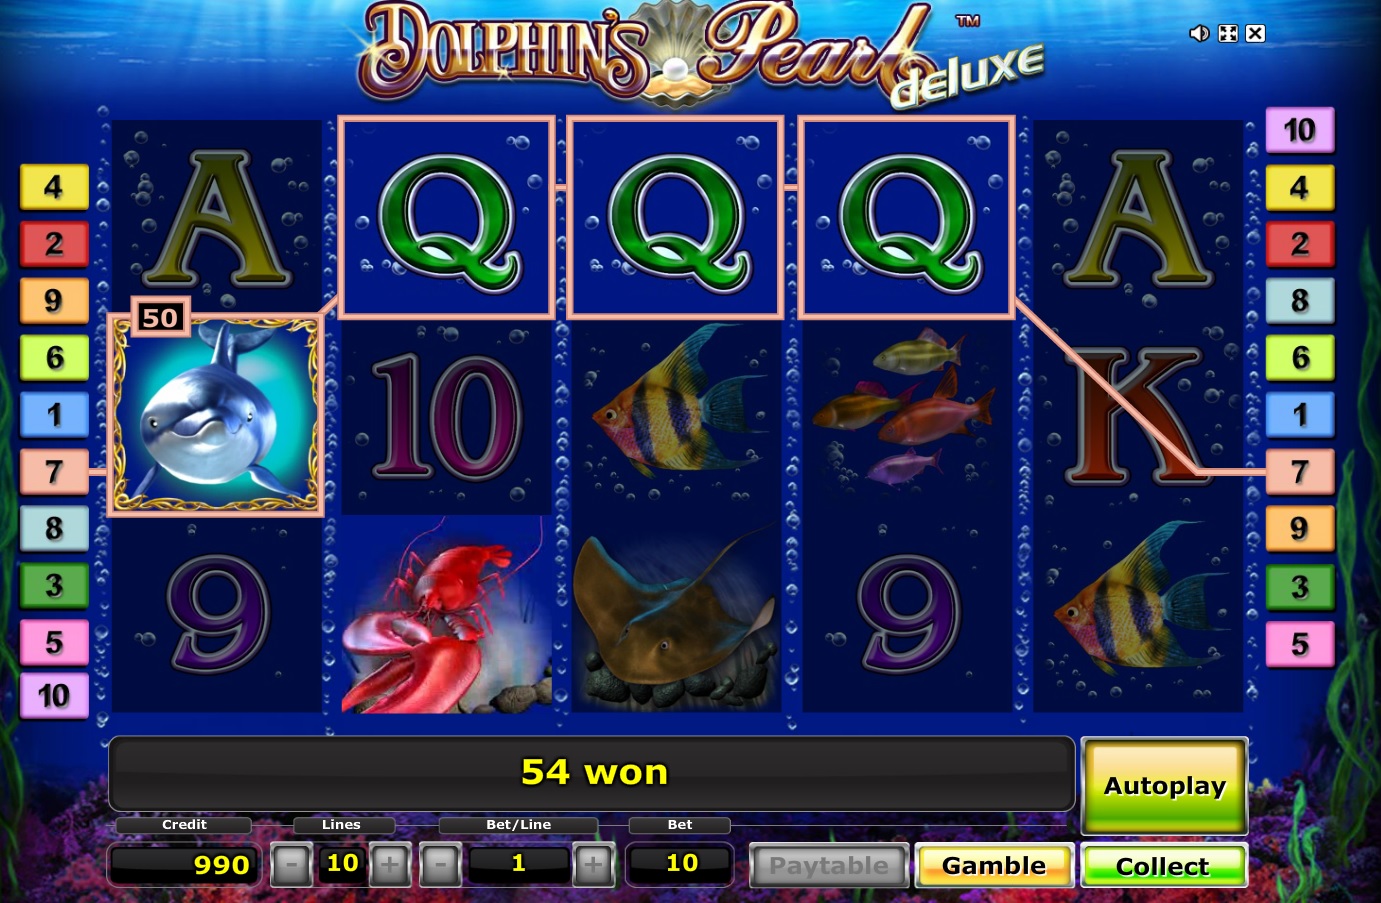 Игровые автоматы адмирал # dolphins и сервисный-ключ покер турниры видео смотреть онлайн